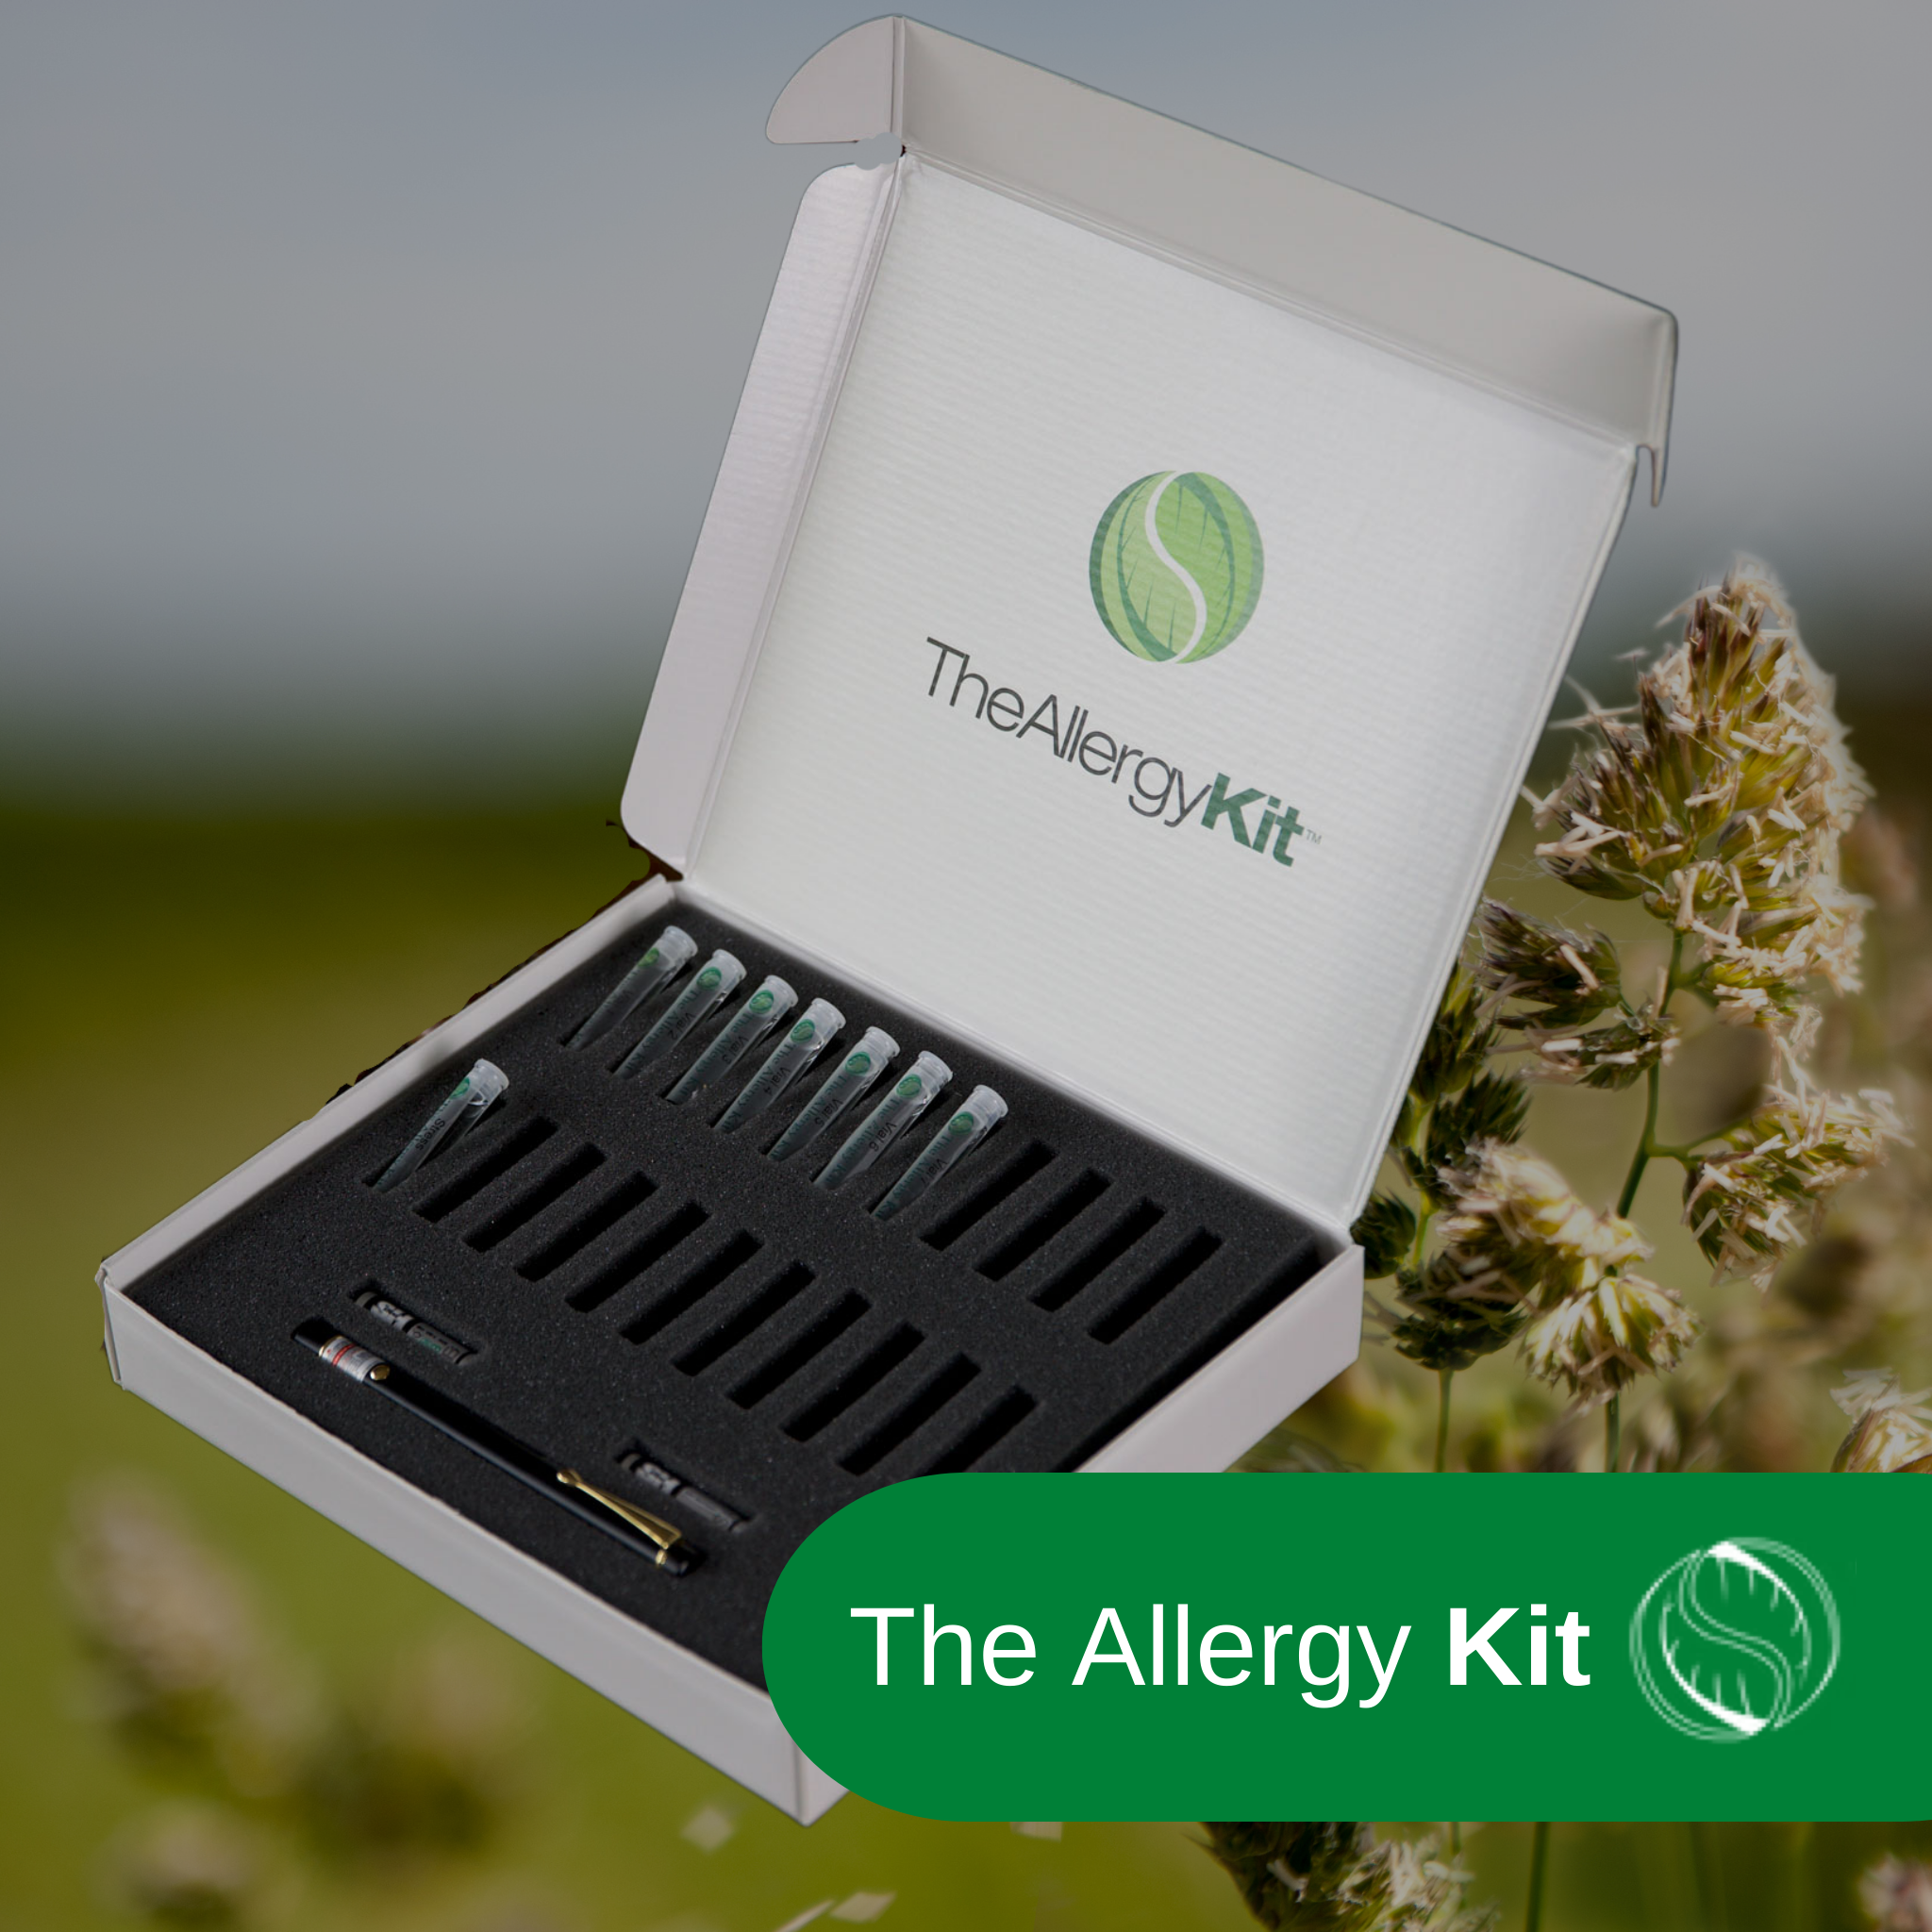 The Allergy Kit